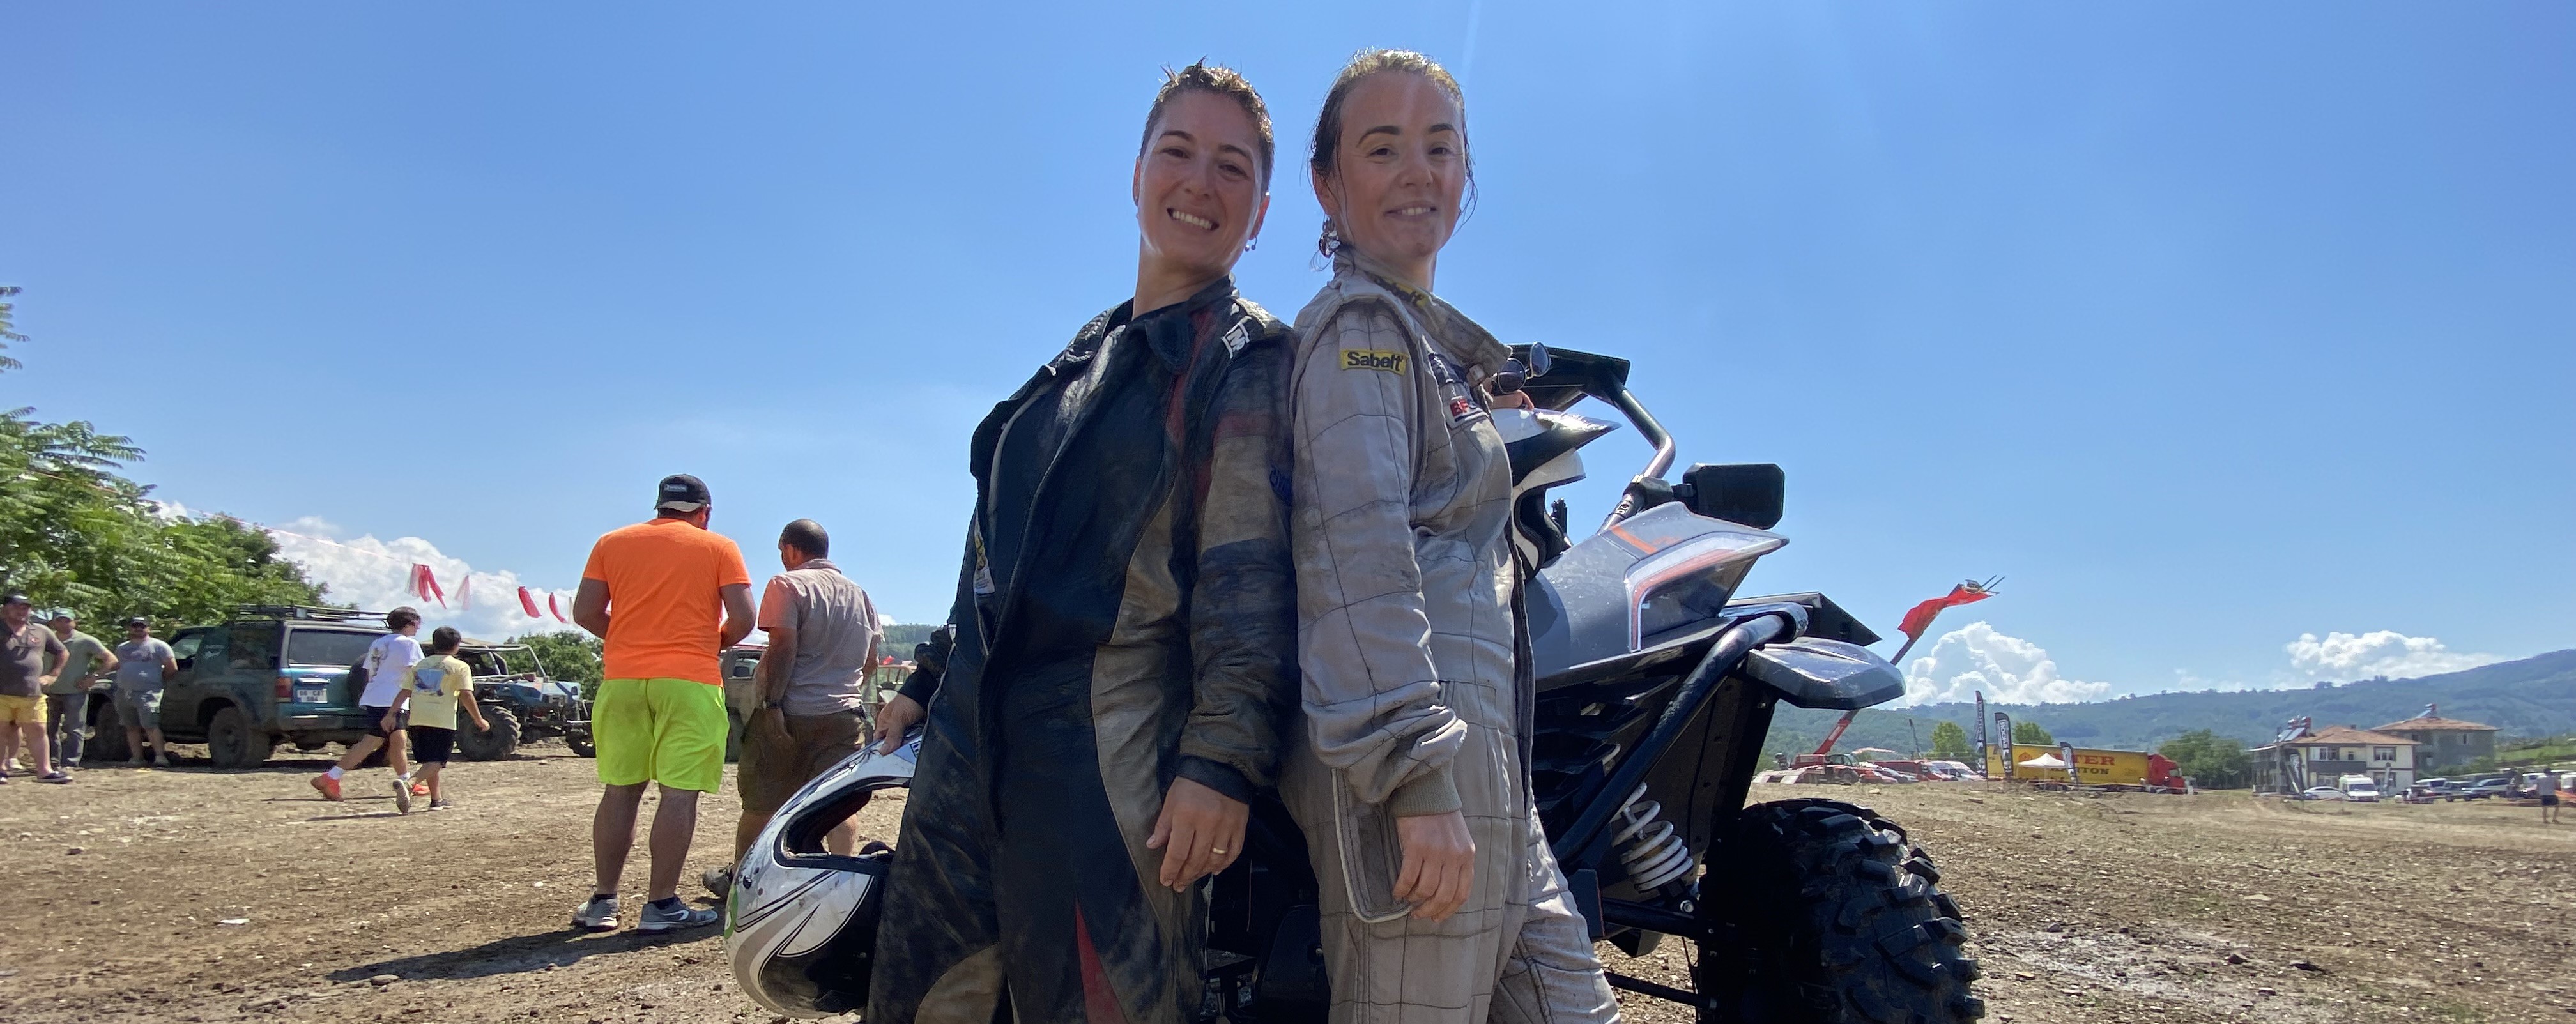 Off-road tutkunu kadın pilotlar pistlerin tozunu attırıyor